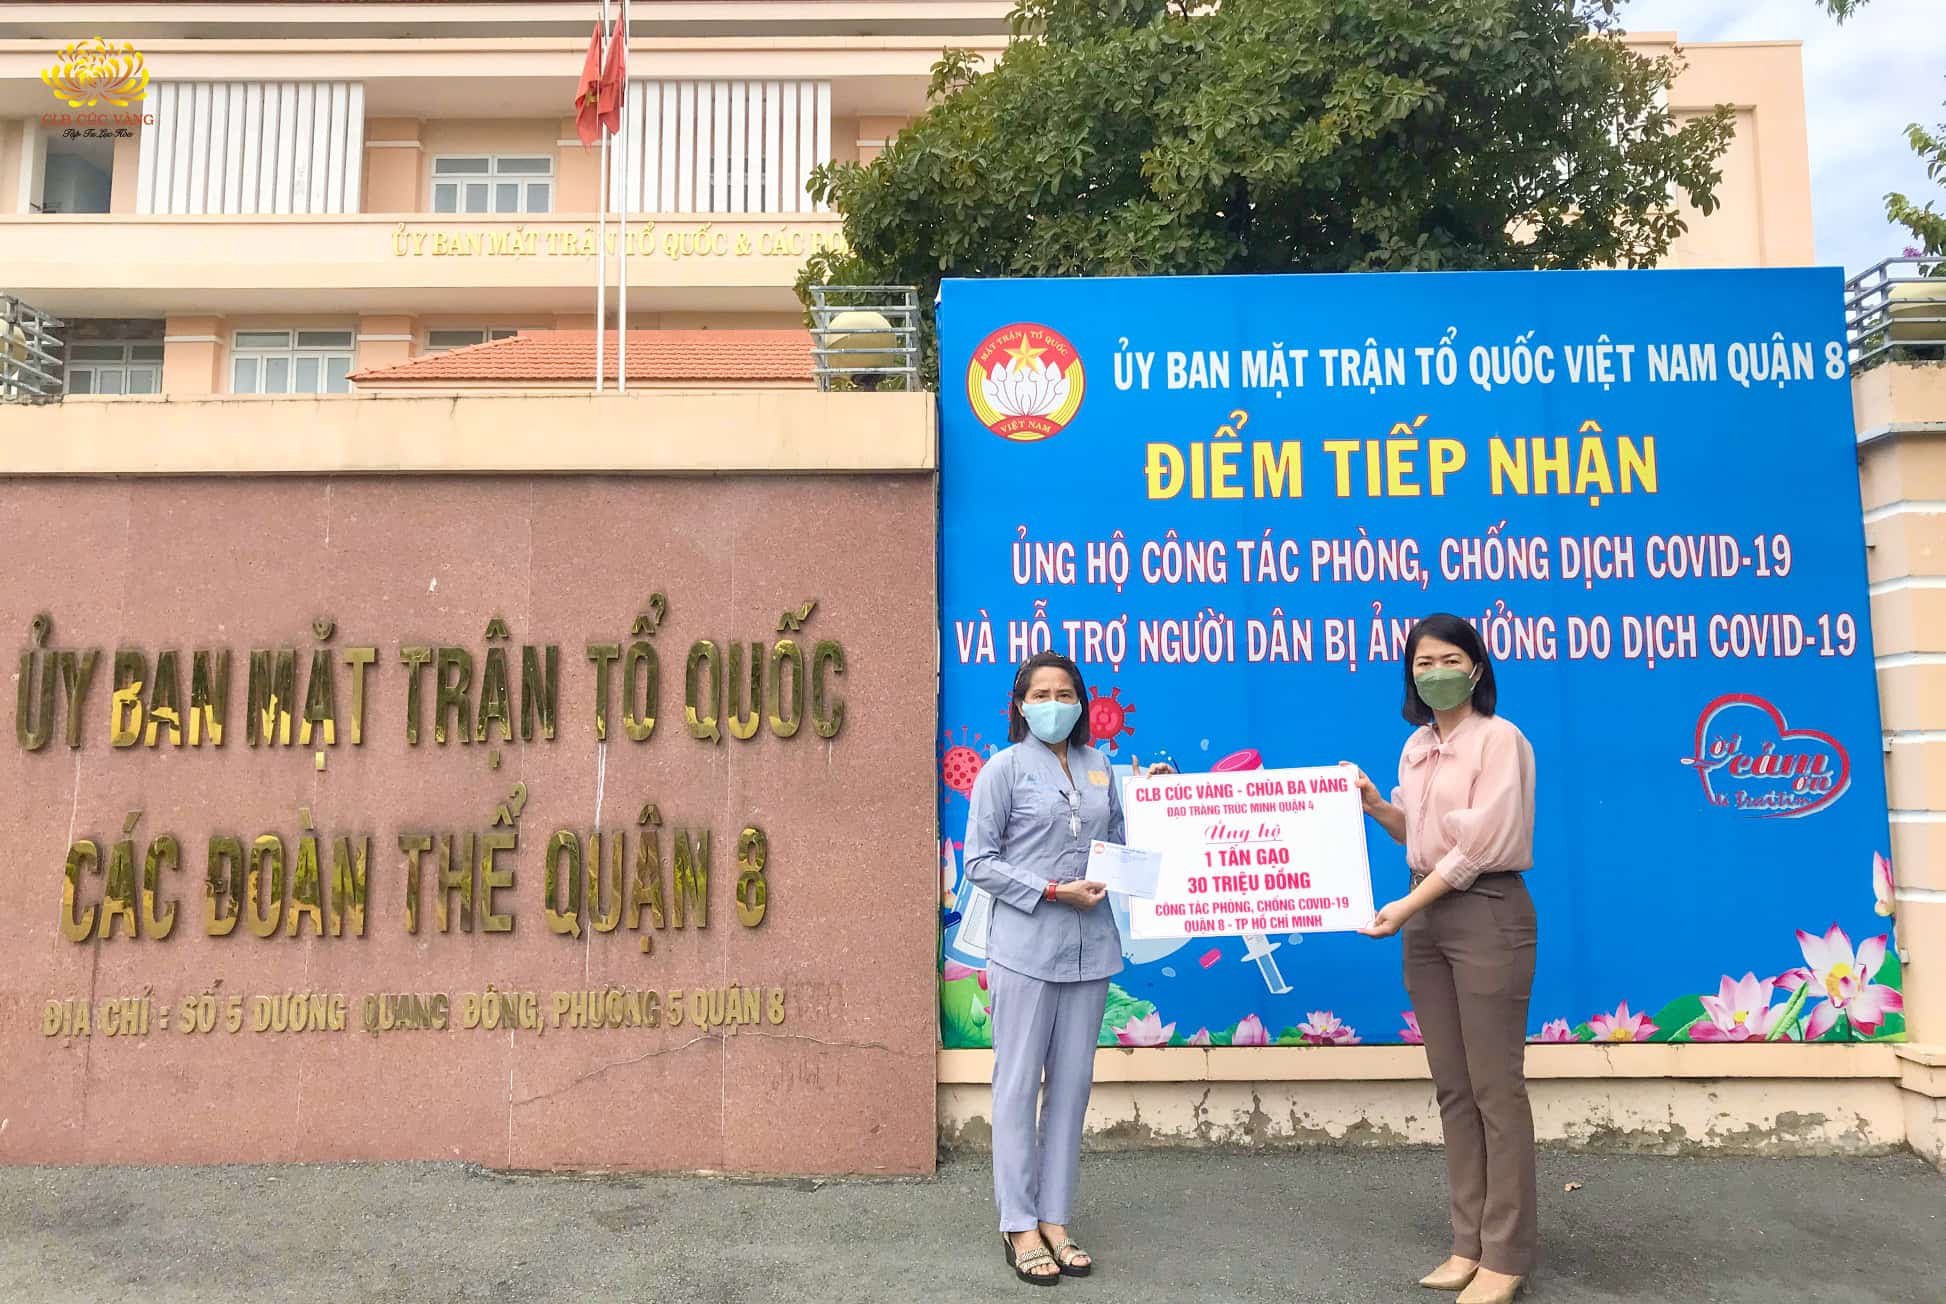 Đại diện Phật tử trong CLB Cúc Vàng - Tập Tu Lục Hòa trao tặng 30 triệu đồng cùng 1 tấn gạo tới Ủy ban MTTQ quận 8 nhằm ủng hộ phòng, chống dịch COVID-19